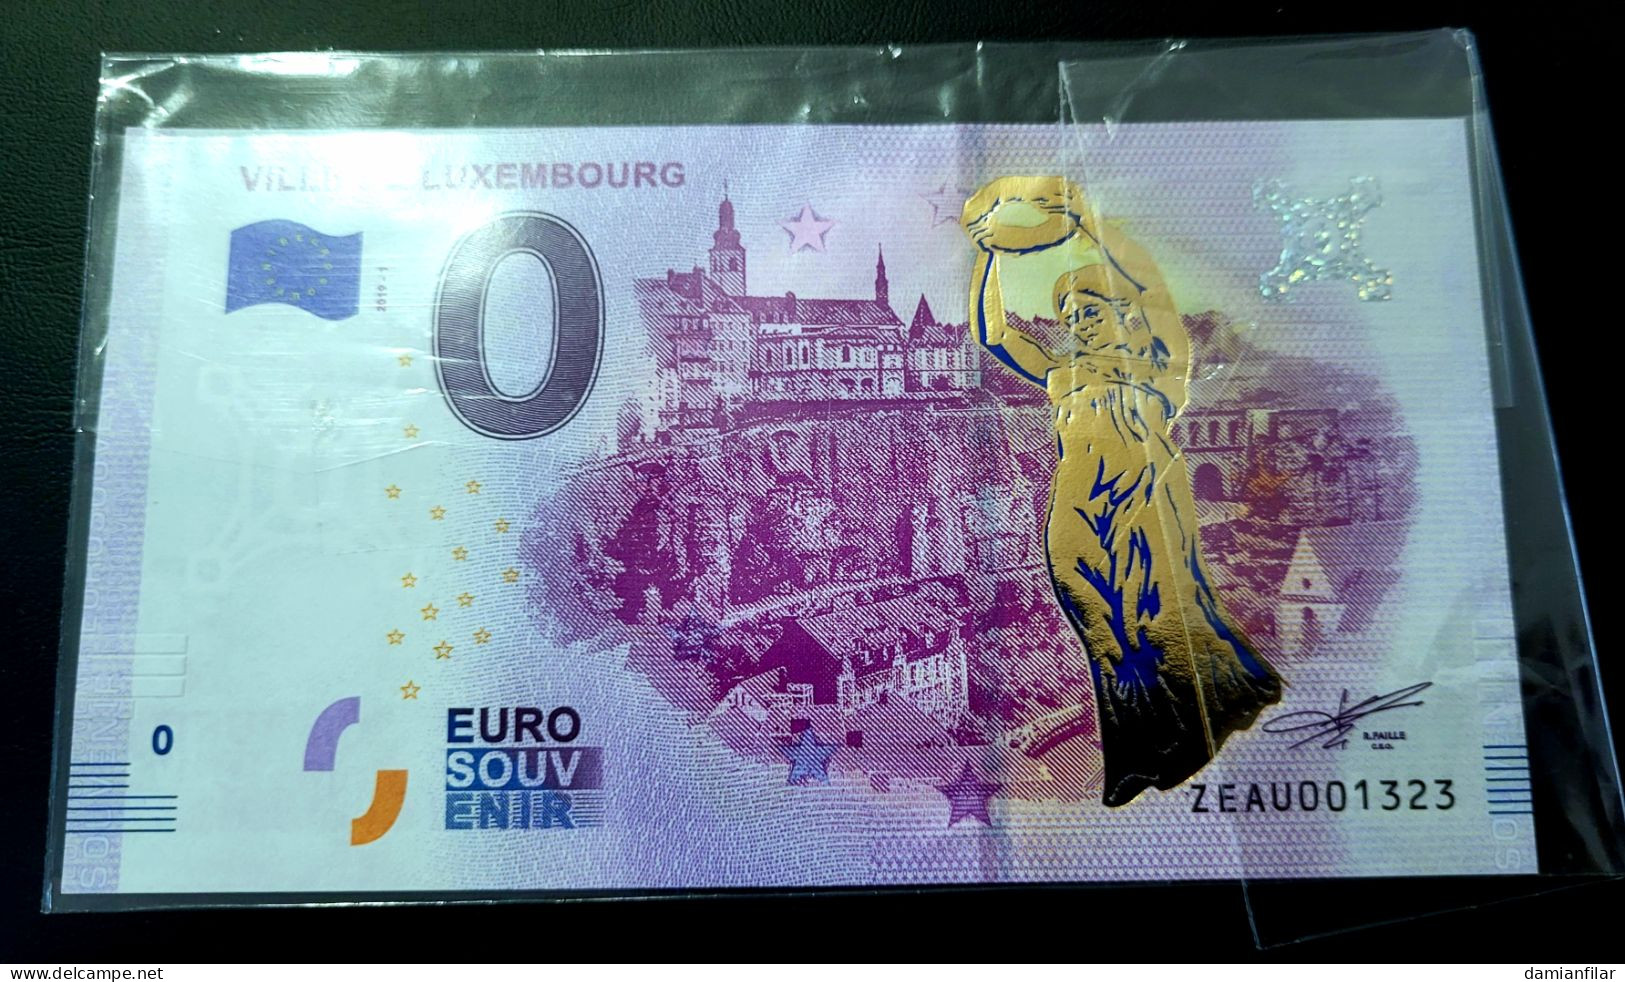 0 Euro Souvenir Ville De Luxembourg ZEAU 2019-1 Gold - Luxemburg